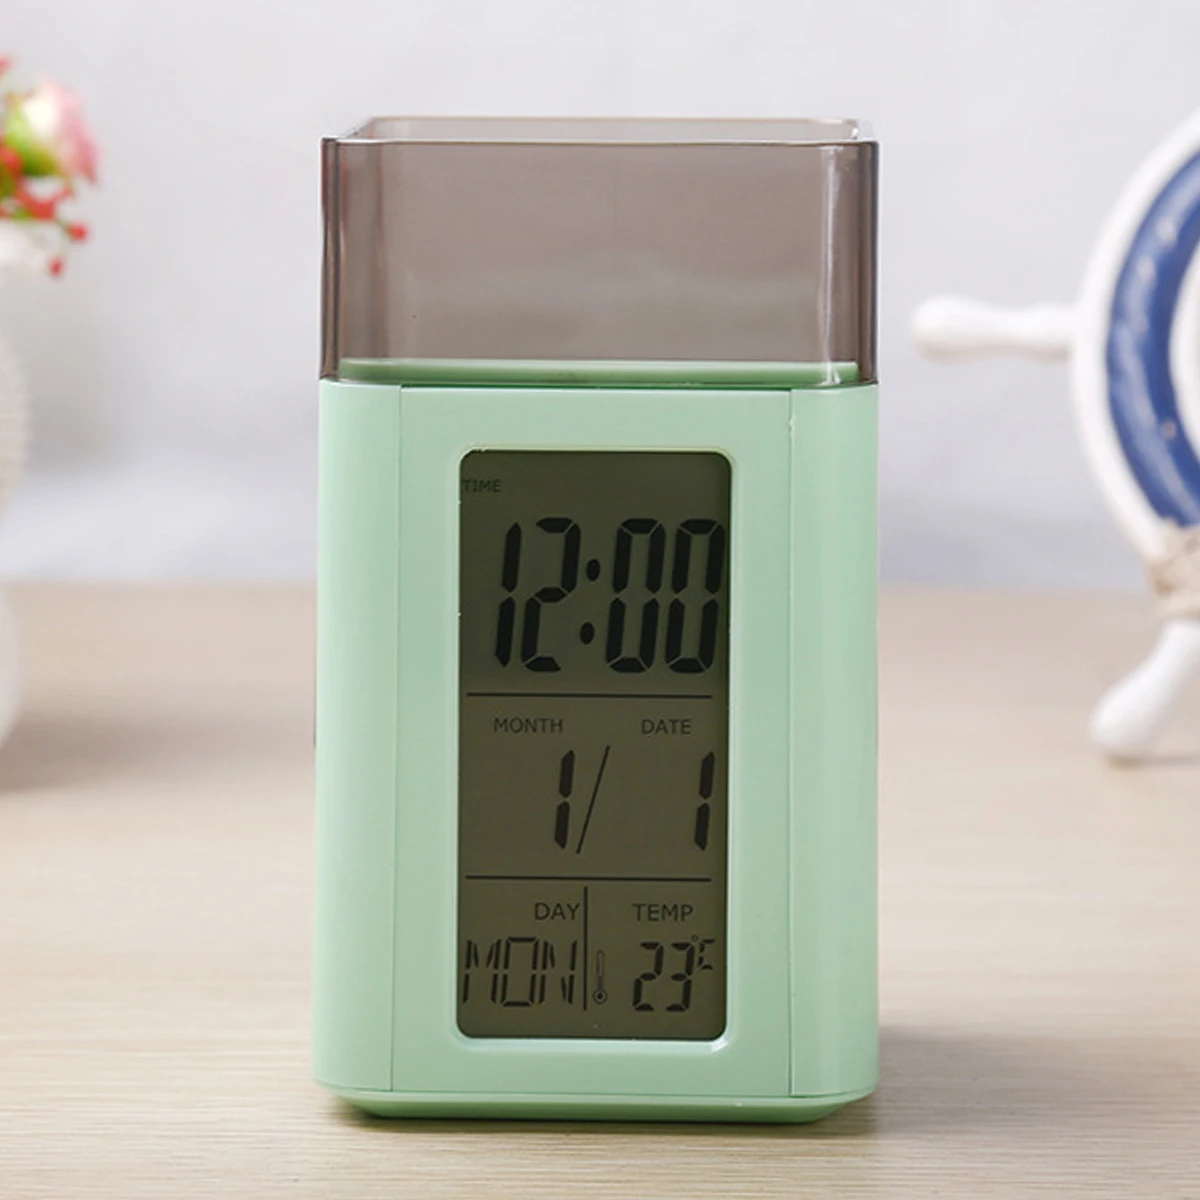 Цифровая настольная подставка для ручек будильник Голосовое управление держатели ручек с температурным календарем дисплей для дома офиса школы